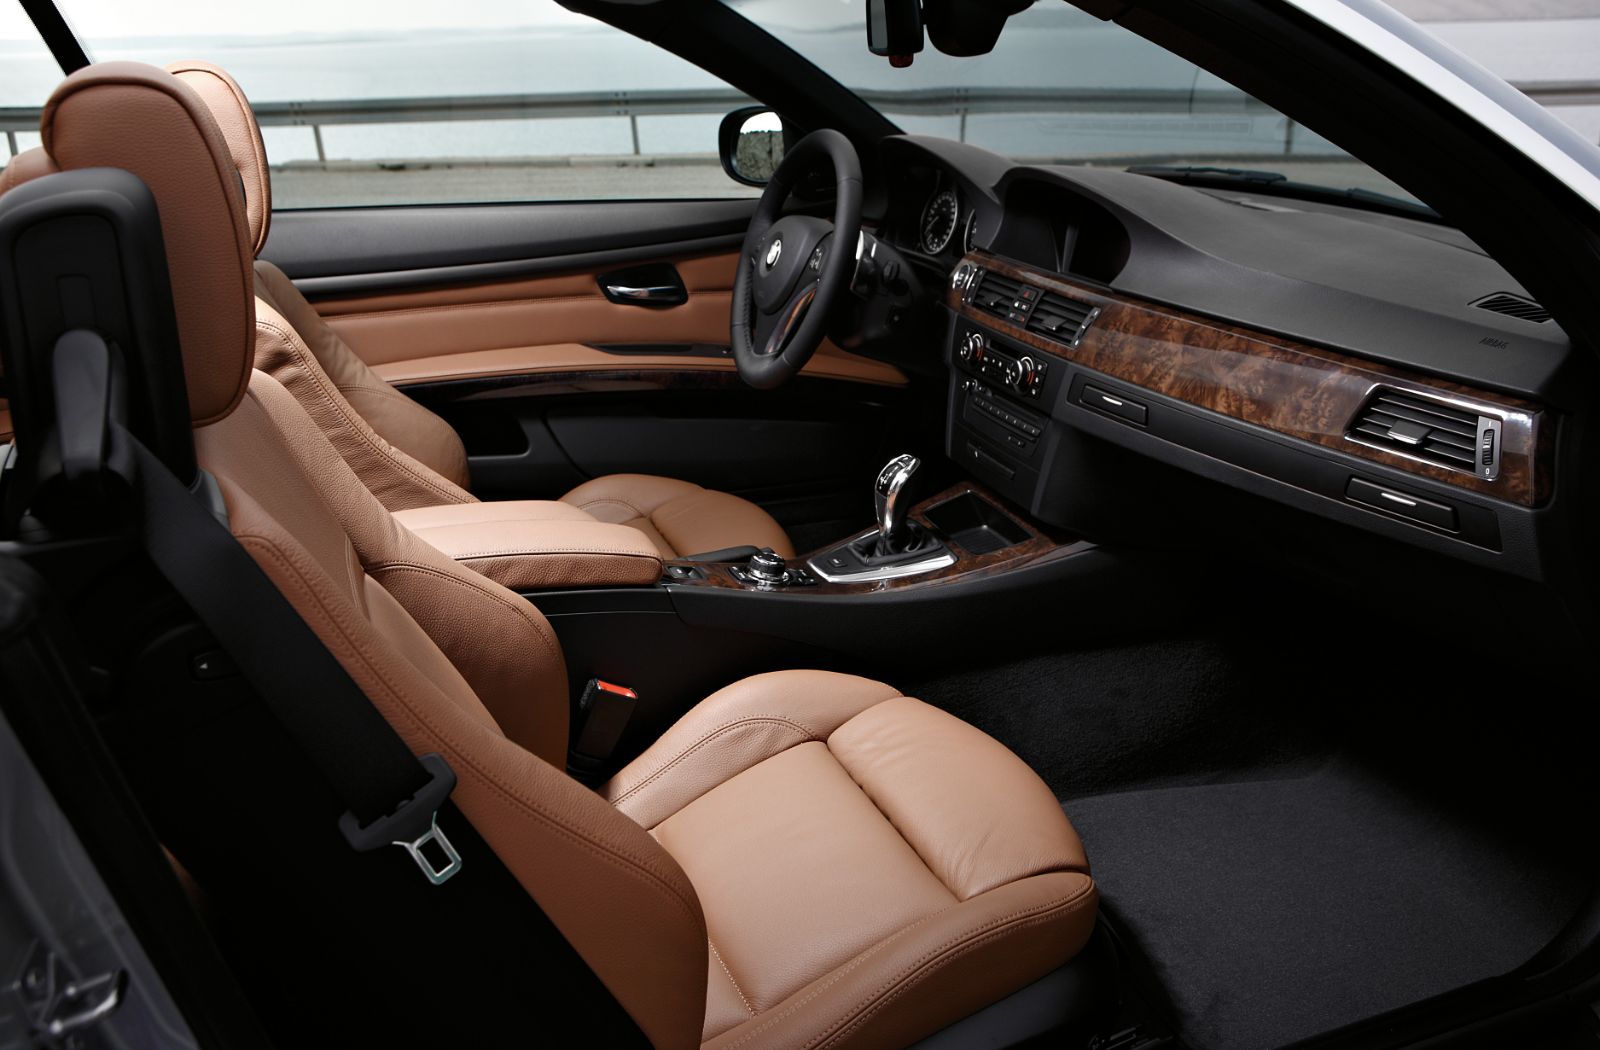 BMW 3 Series Cabrio (E93) Photos and Specs. Photo: BMW 3 Series Cabrio (E93)  specs and 26 perfect photos …